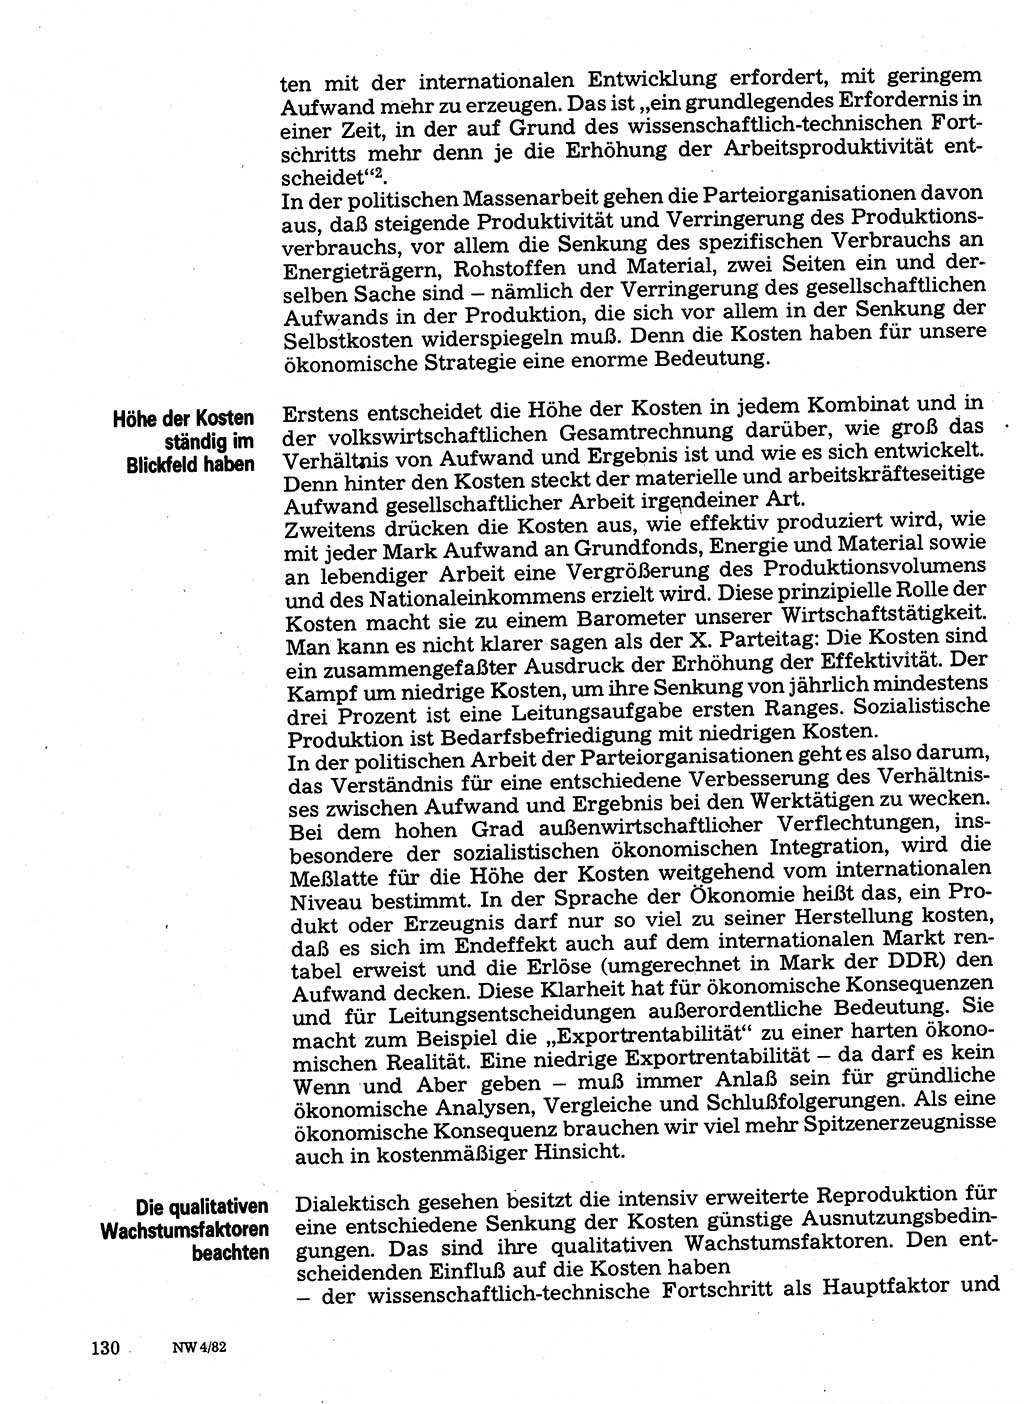 Neuer Weg (NW), Organ des Zentralkomitees (ZK) der SED (Sozialistische Einheitspartei Deutschlands) für Fragen des Parteilebens, 37. Jahrgang [Deutsche Demokratische Republik (DDR)] 1982, Seite 130 (NW ZK SED DDR 1982, S. 130)